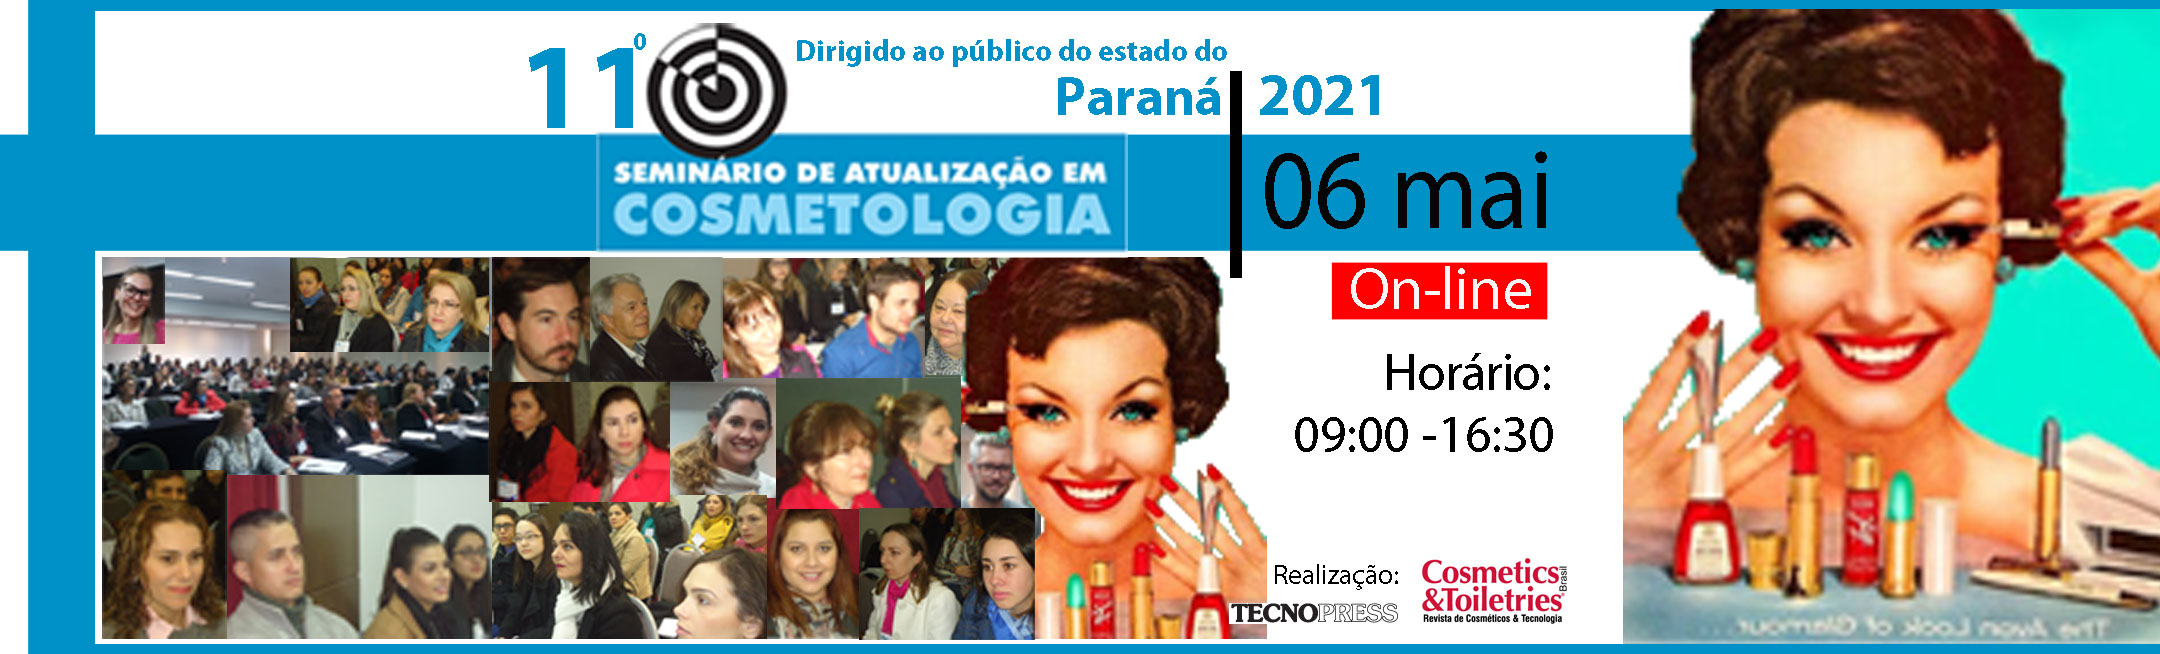 11º Seminário de Atualização em Cosmetologia do Paraná